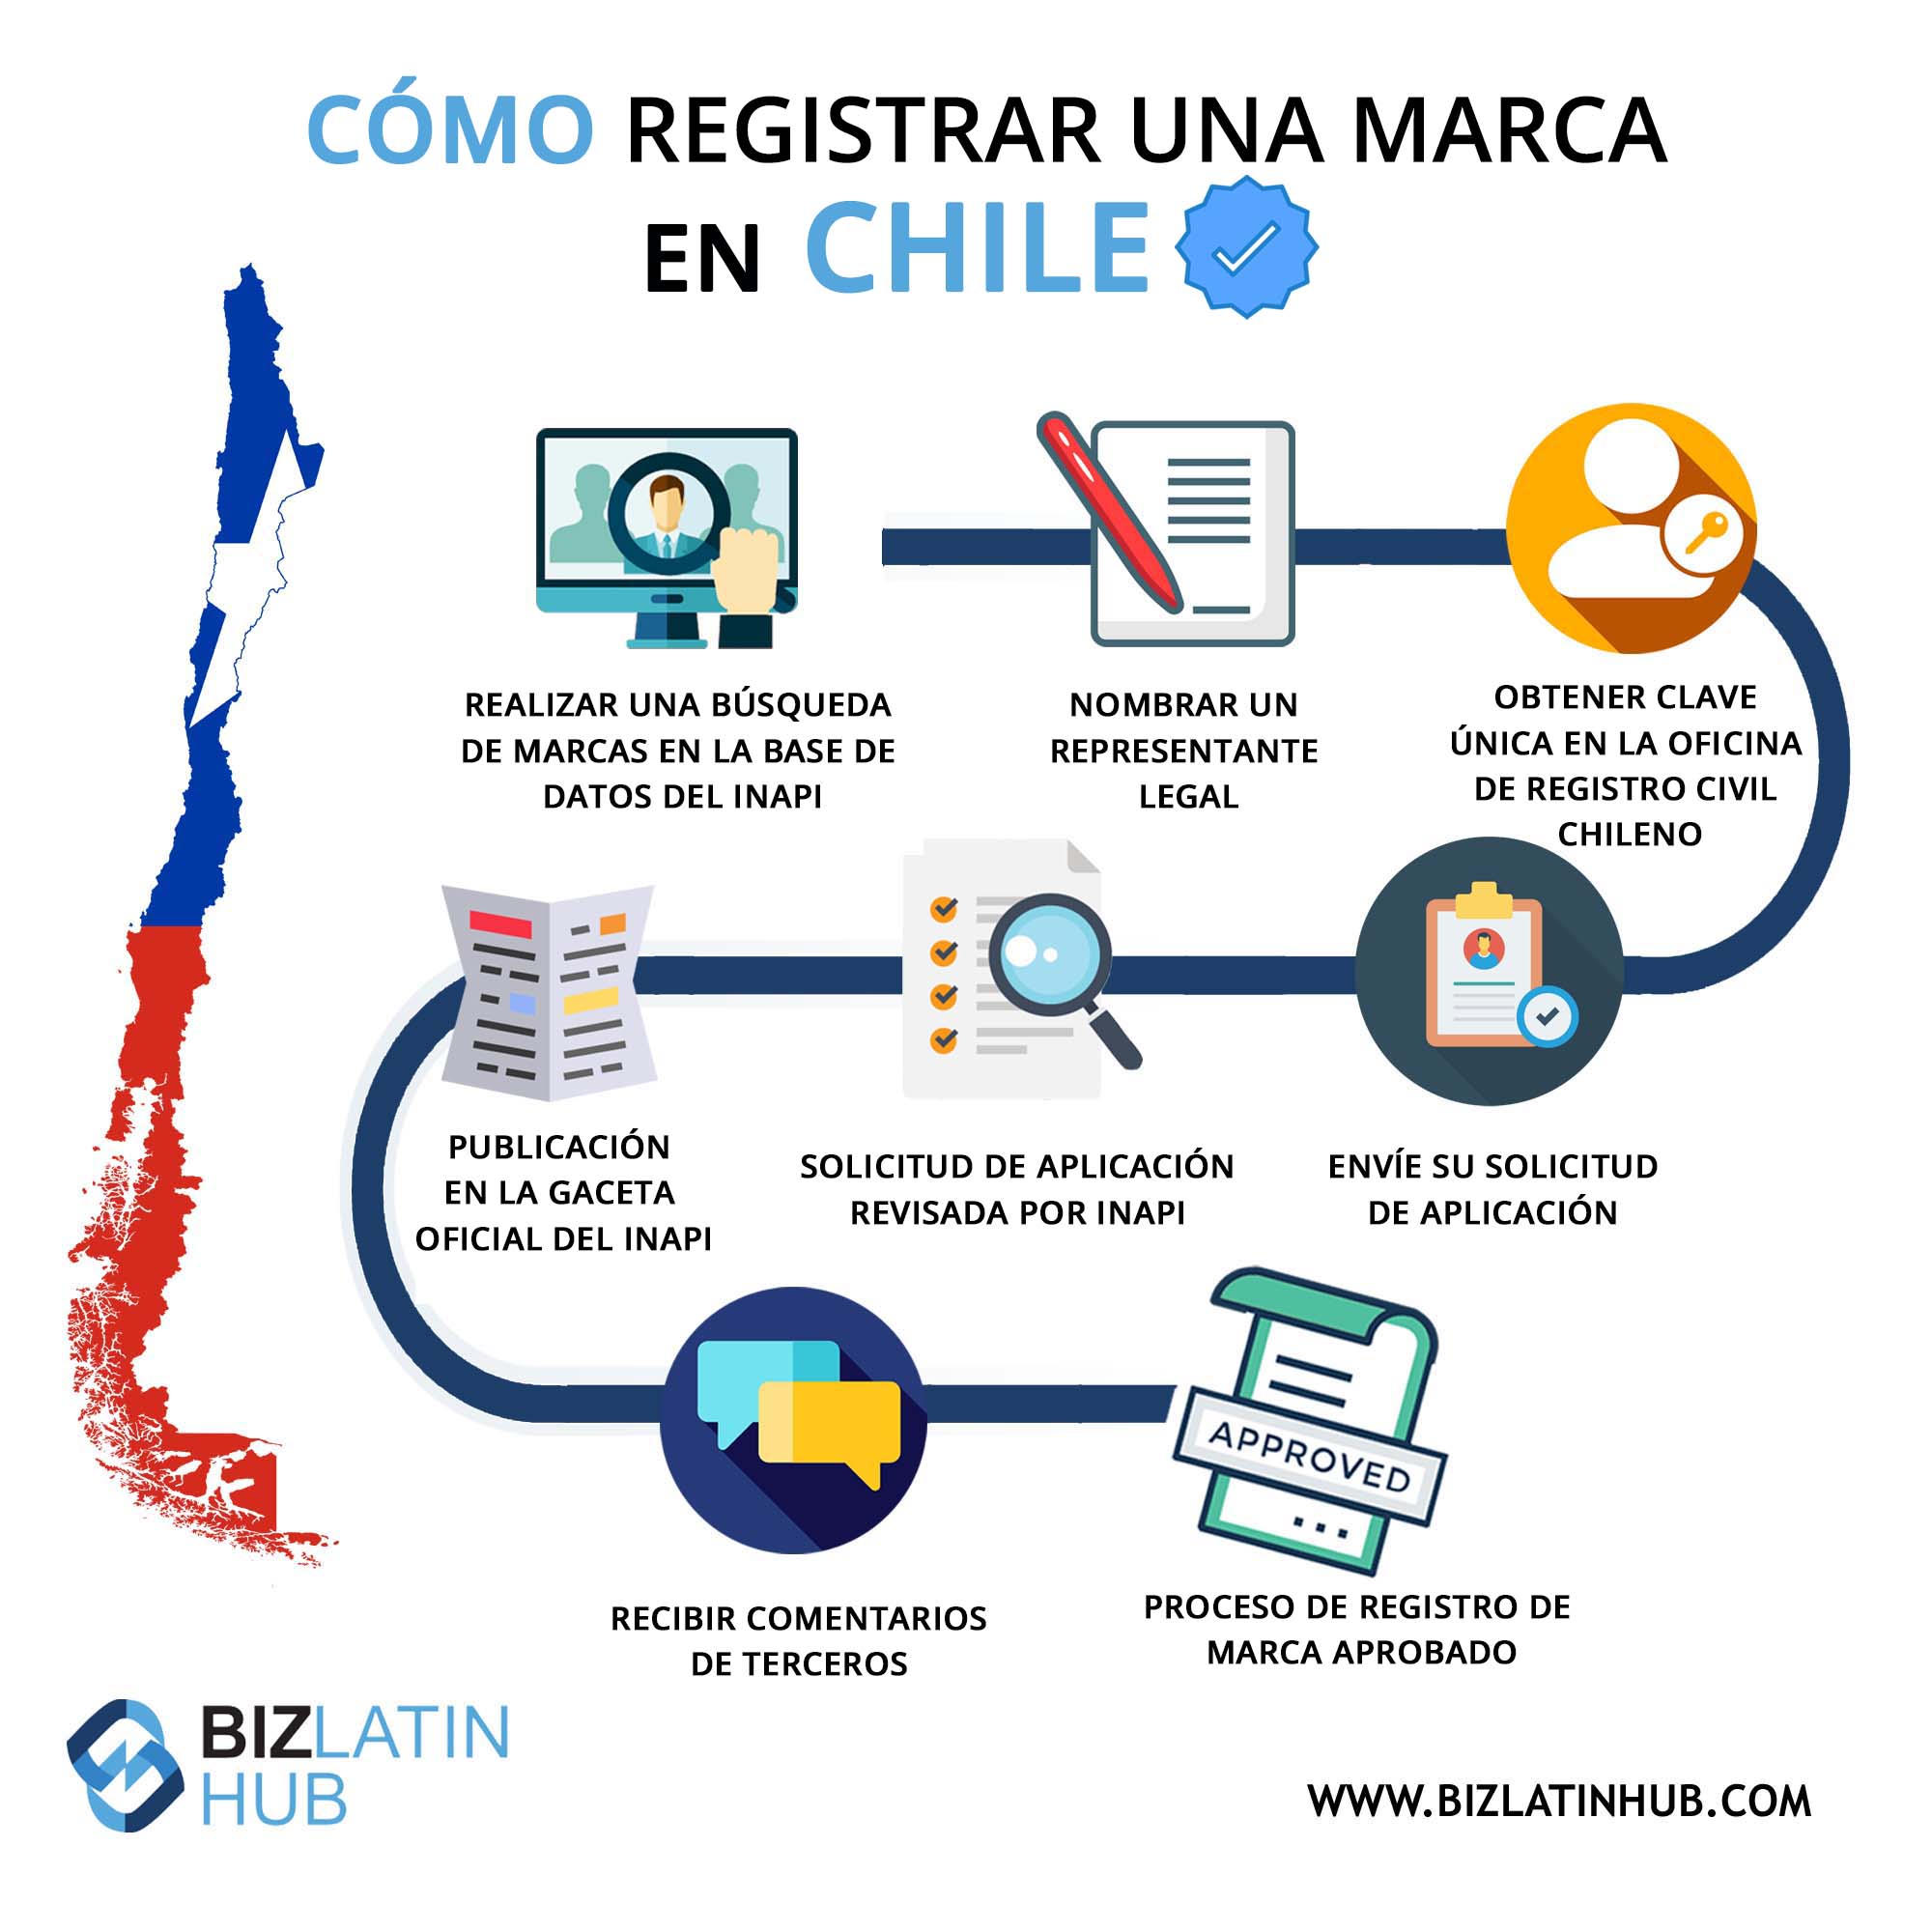 ¿Cómo puedo registrar una marca en Chile gratis?